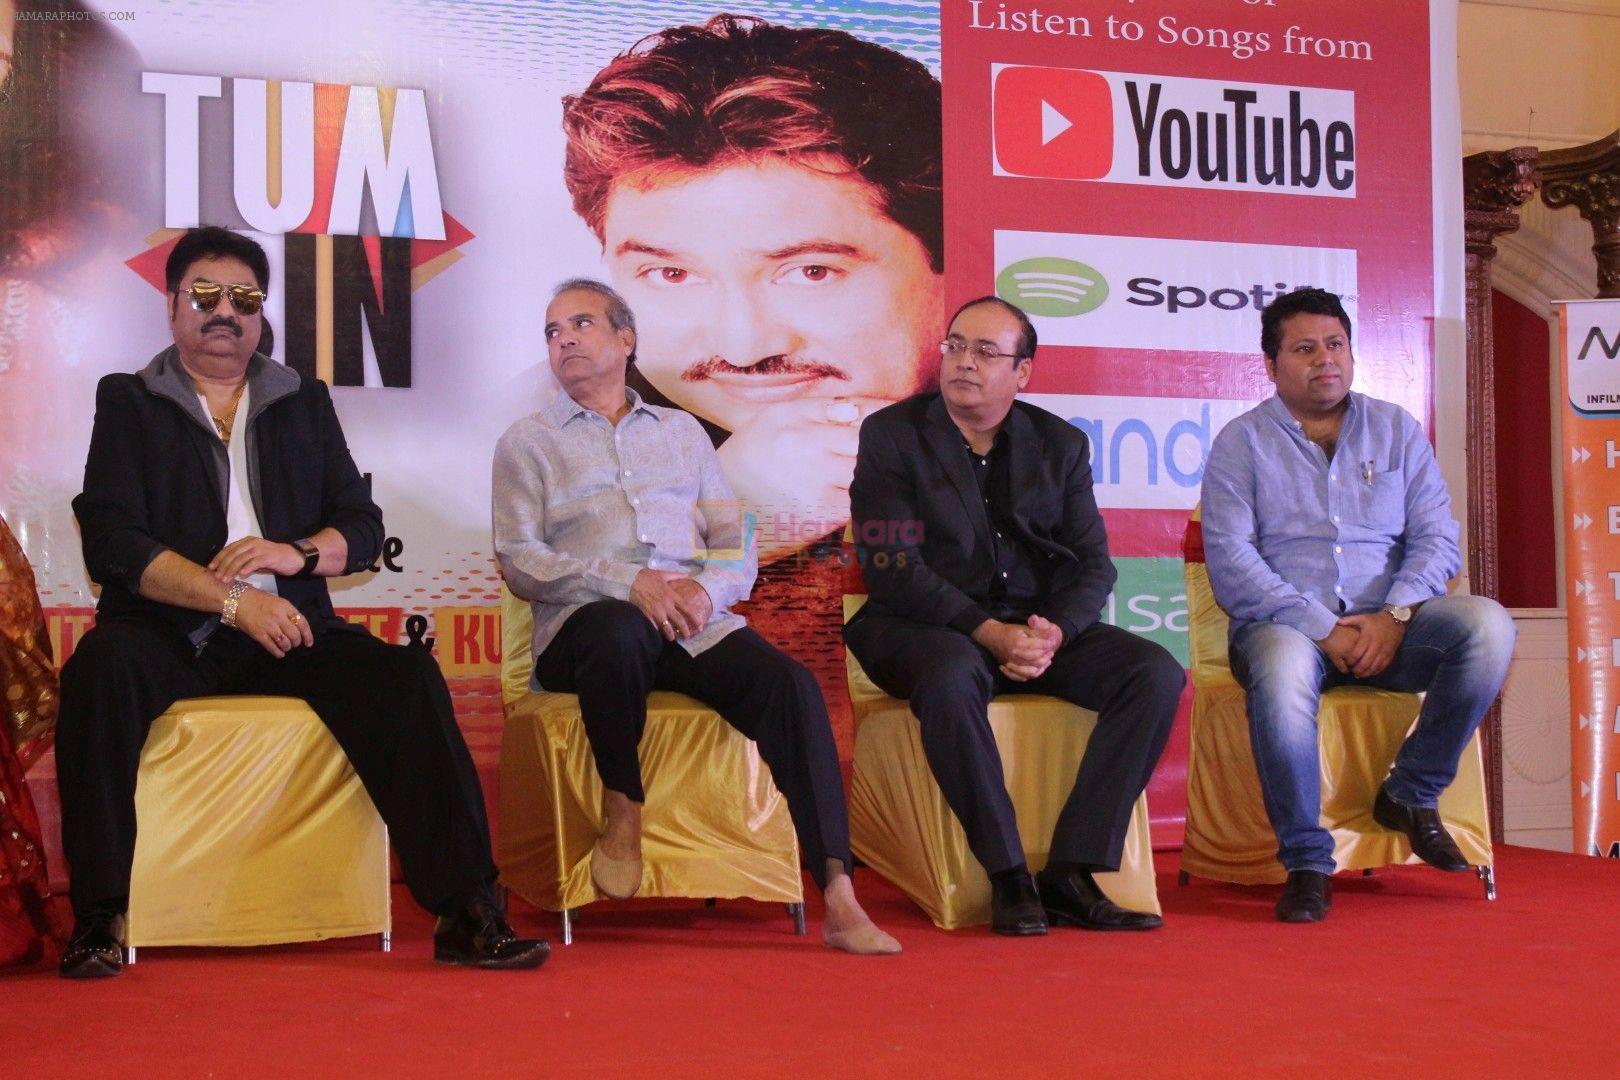 Suresh Wadkar, Kumar Sanu t the launch of New Album Tum Bin on 22nd Dec 2017